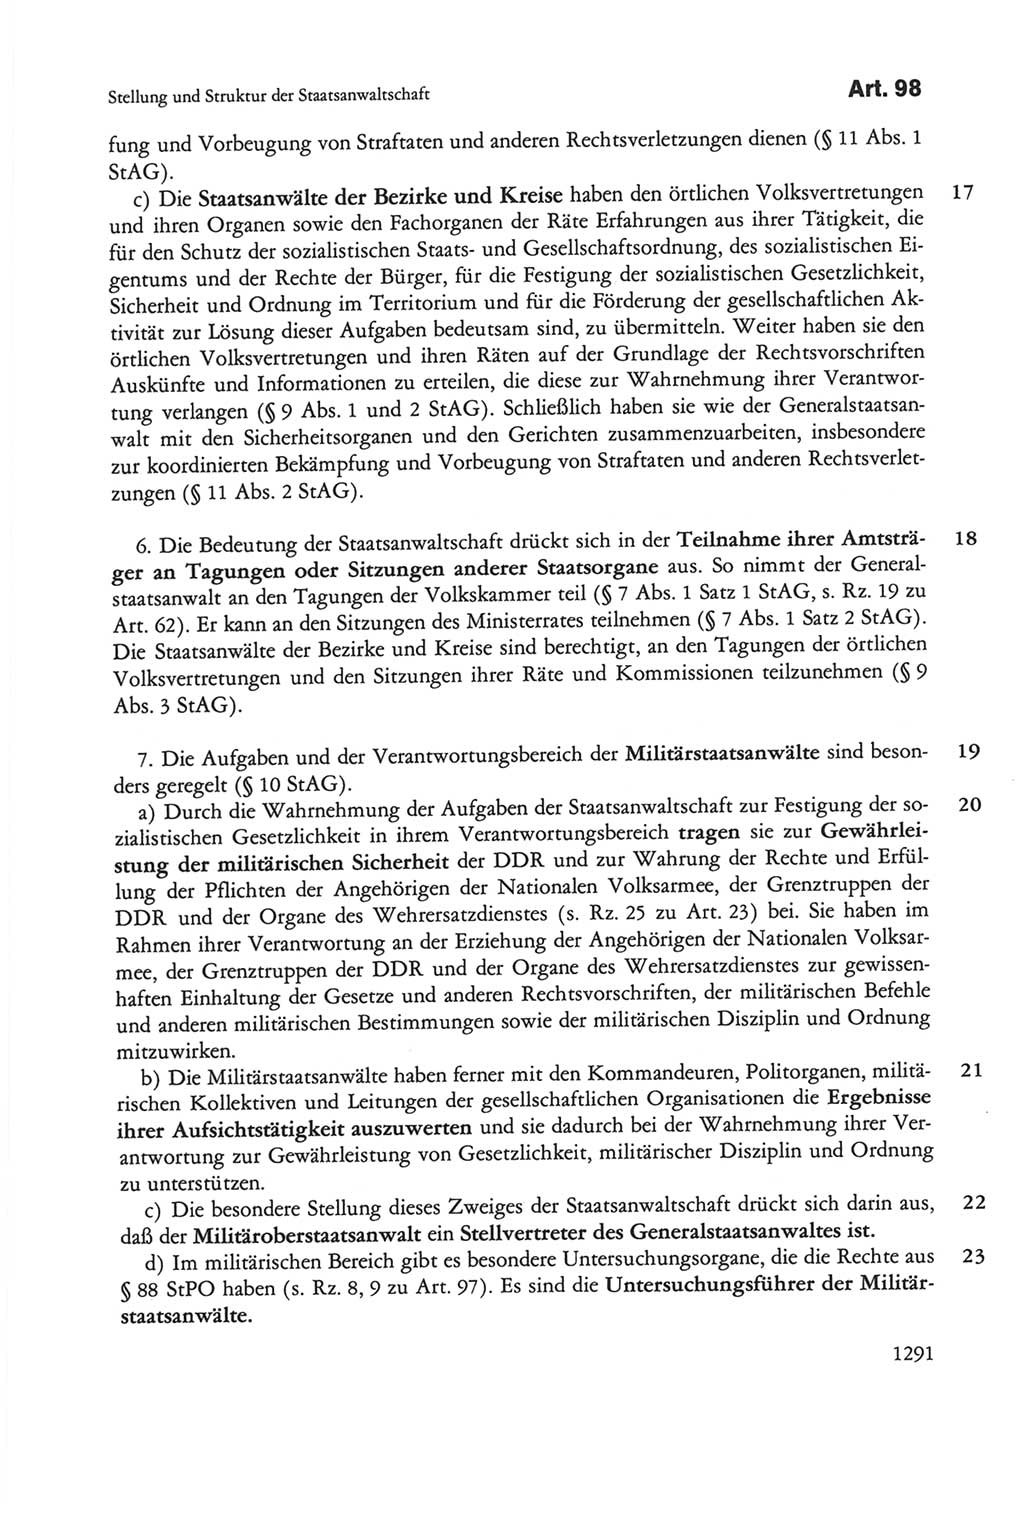 Die sozialistische Verfassung der Deutschen Demokratischen Republik (DDR), Kommentar 1982, Seite 1291 (Soz. Verf. DDR Komm. 1982, S. 1291)